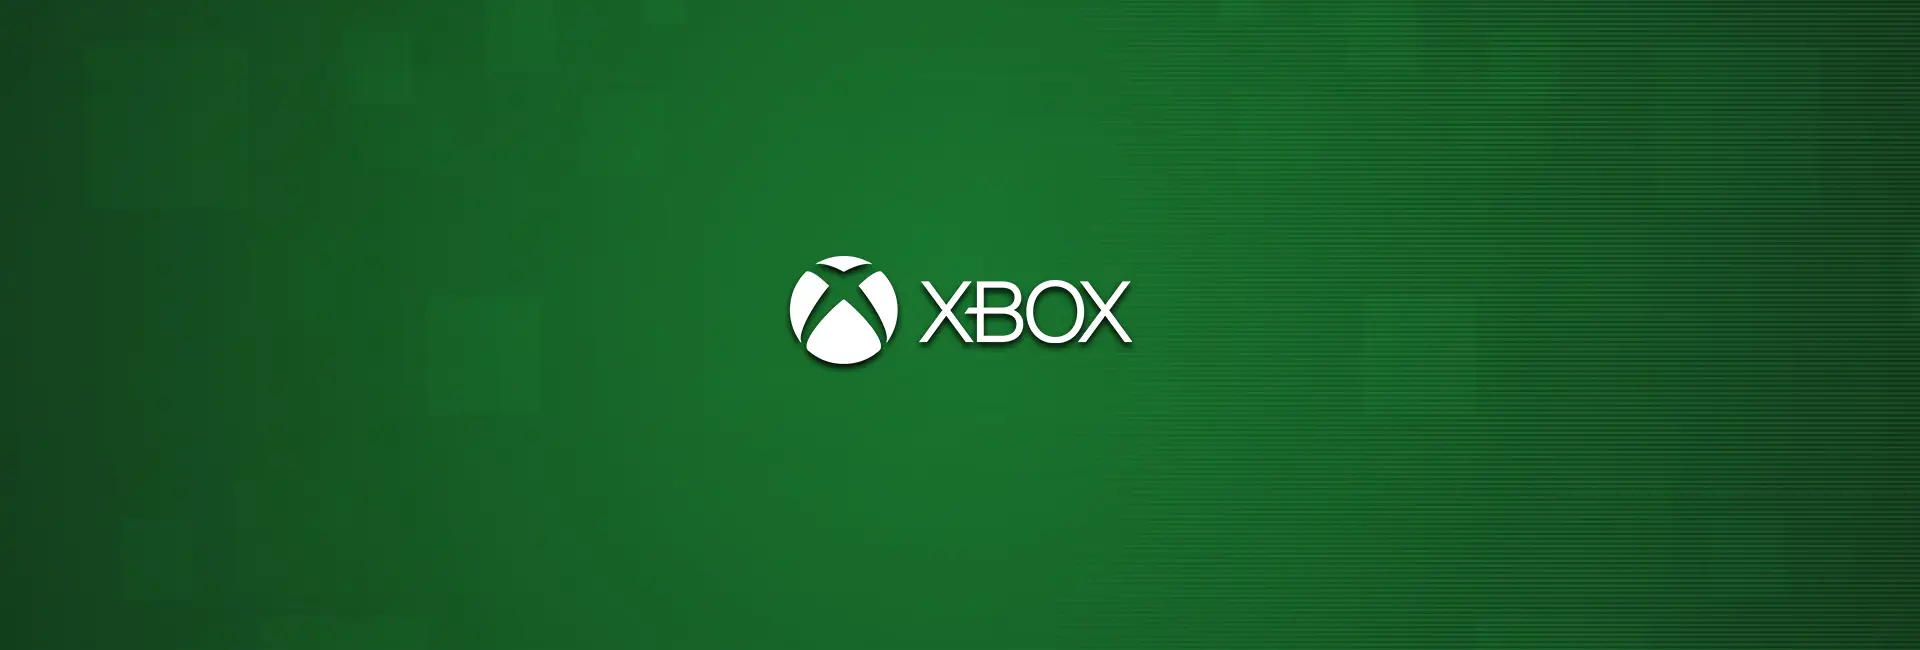 Carte cadeau Xbox photo stock éditorial. Image du matériel - 158956638